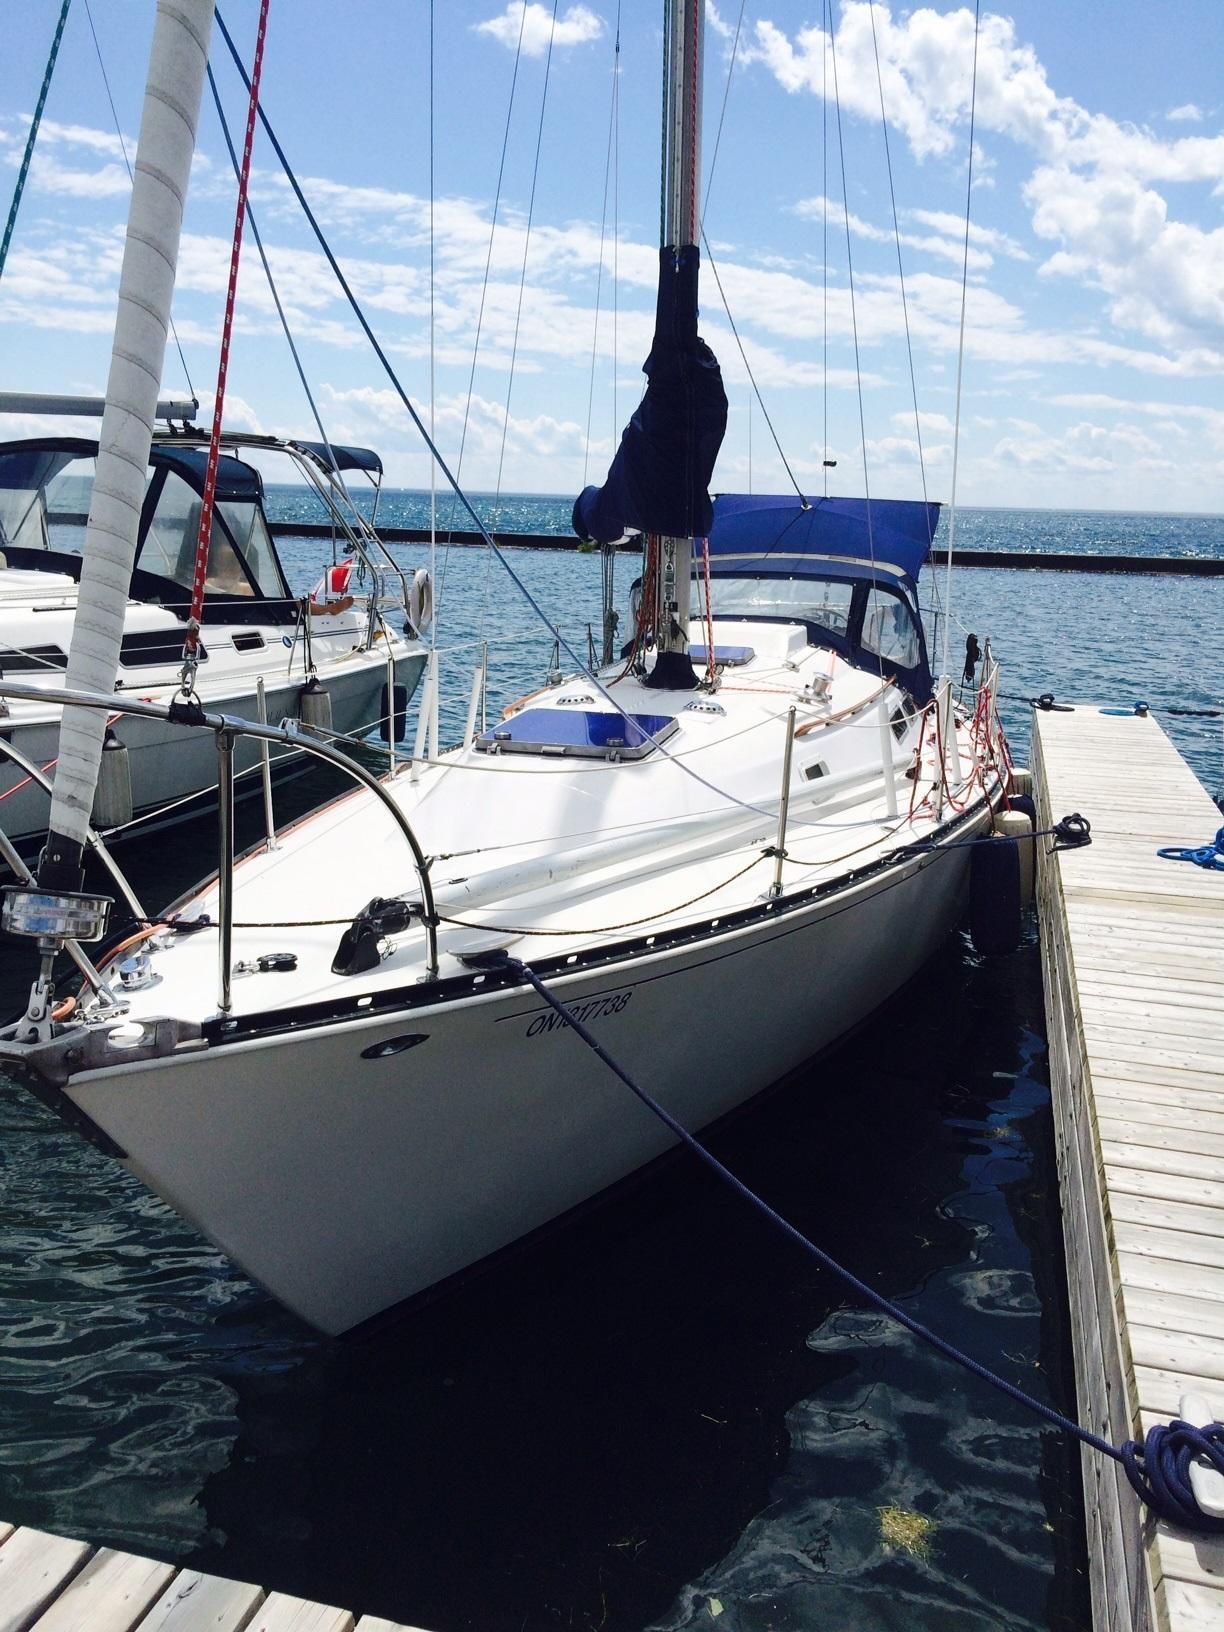 yachtworld sailboats washington